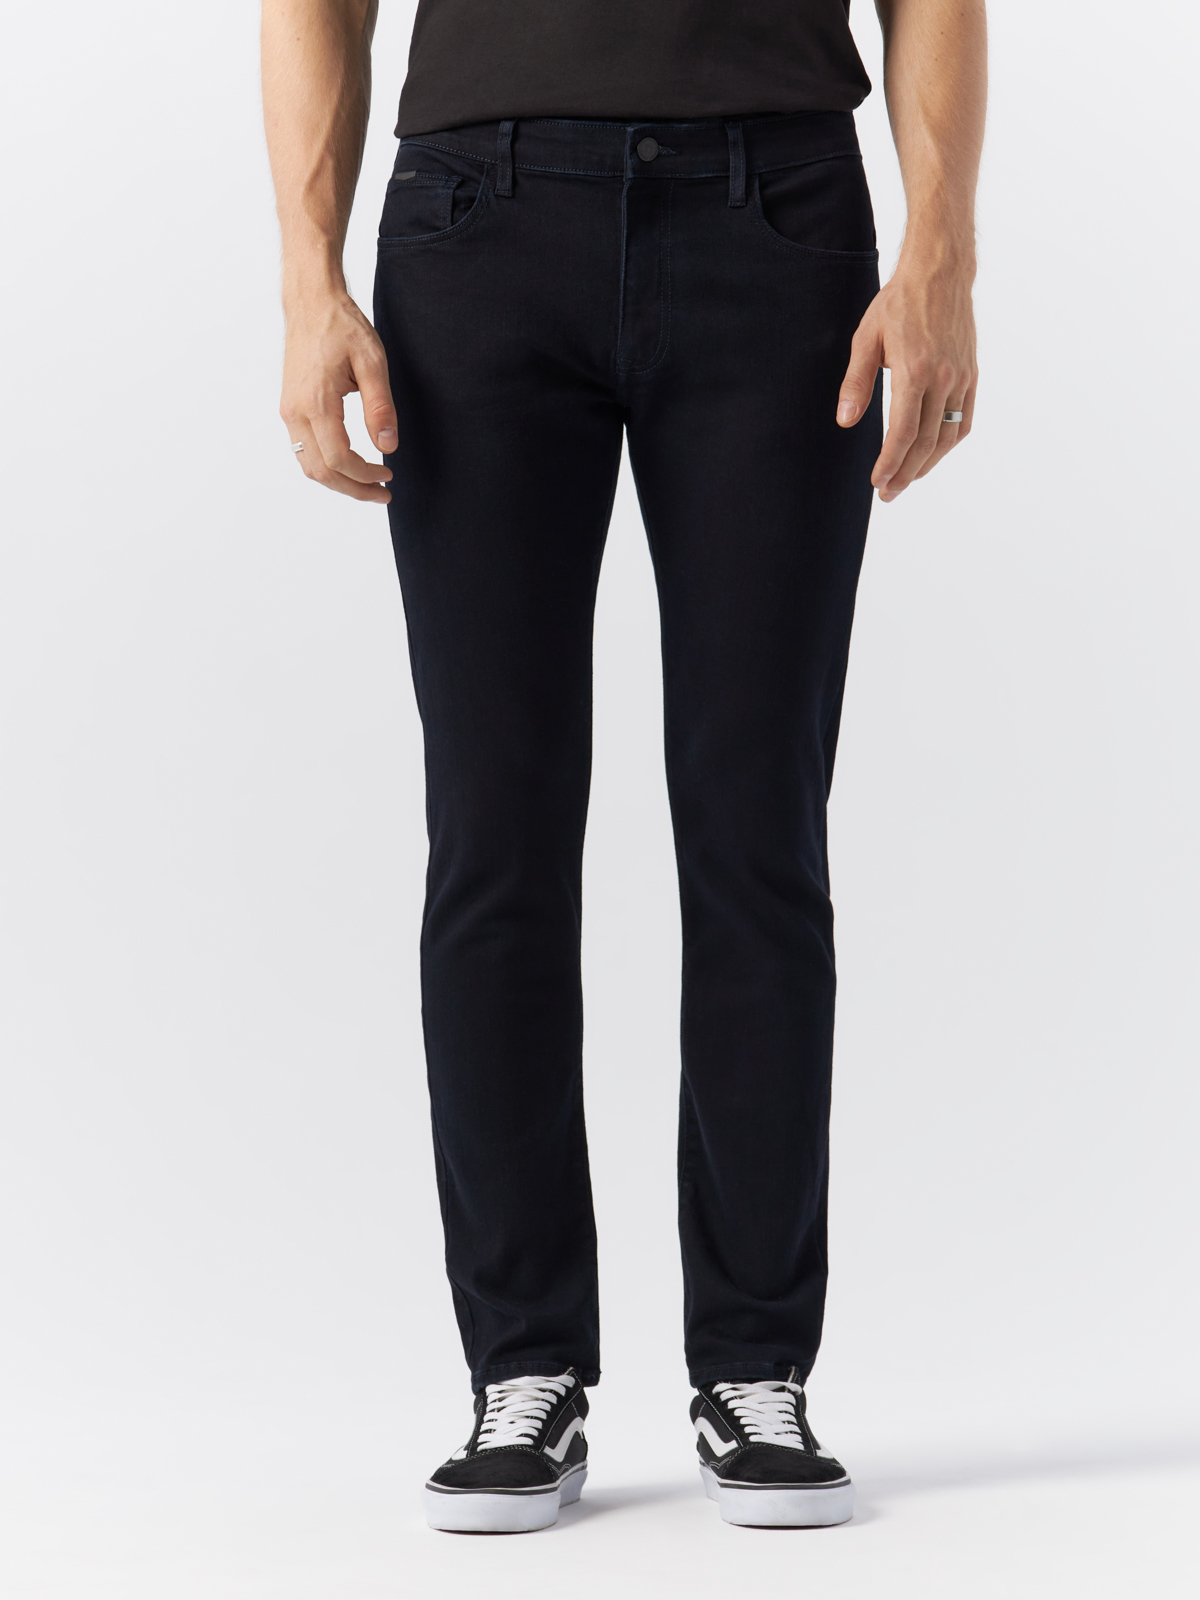 Джинсы Cross Jeans для мужчин, E 185-169, размер 33-30, чёрные